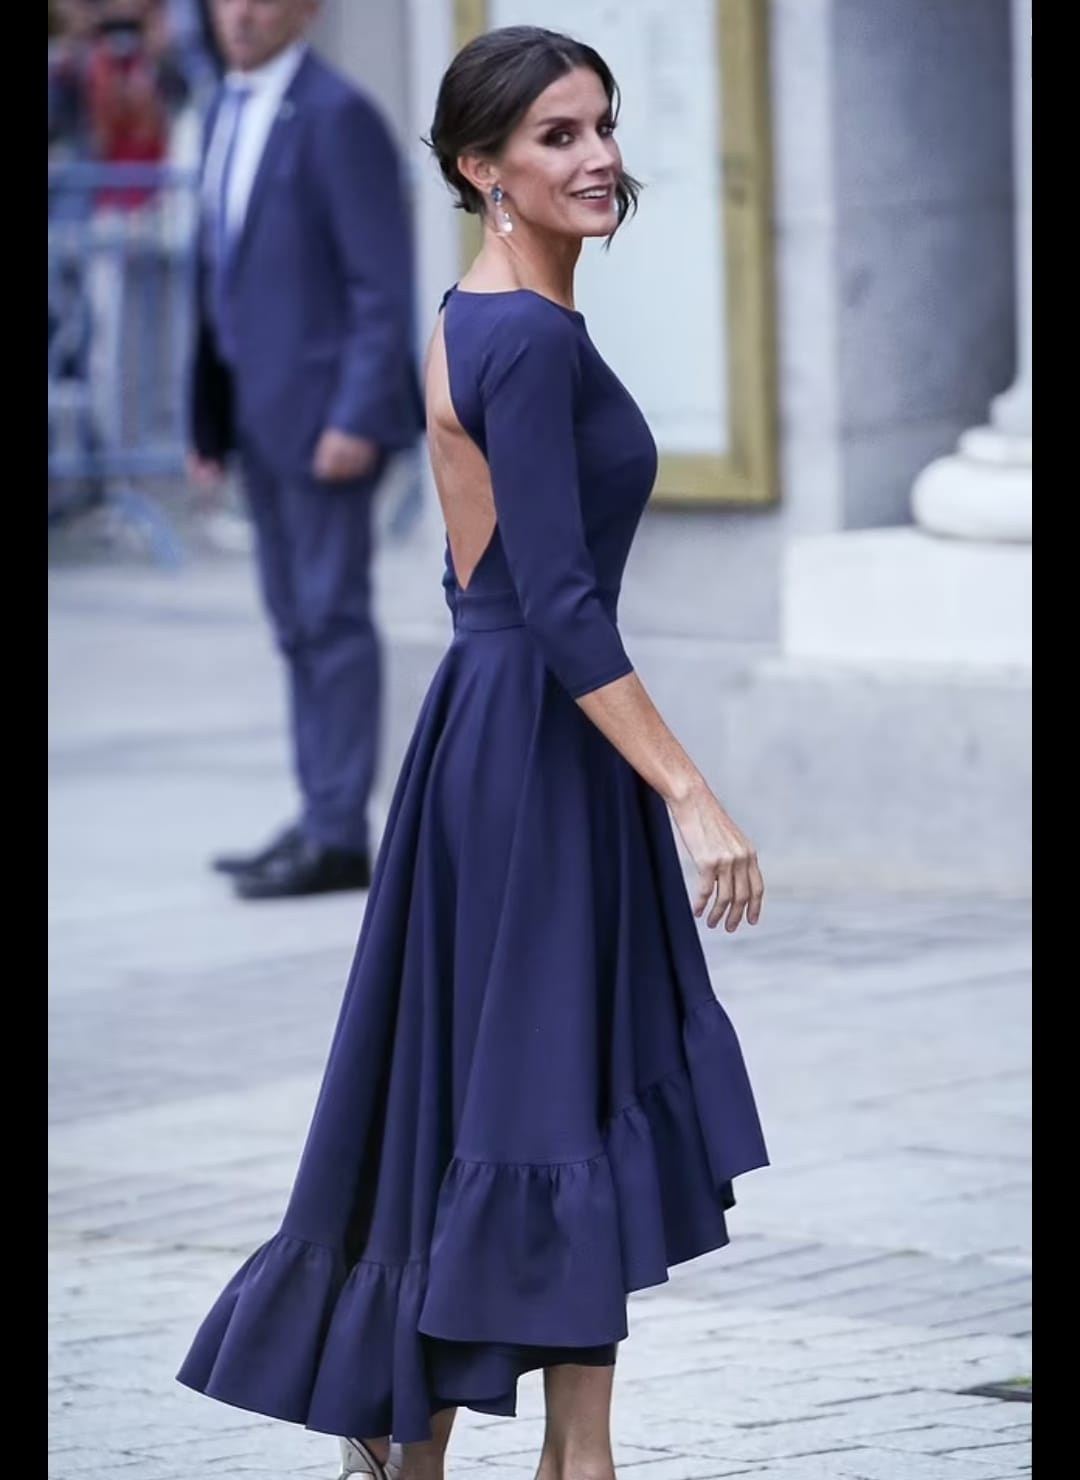 الملكة ليتيزيا أنيقة فى فستان أزرق داكن جريء .. شاهدى إطلالتها .. صور